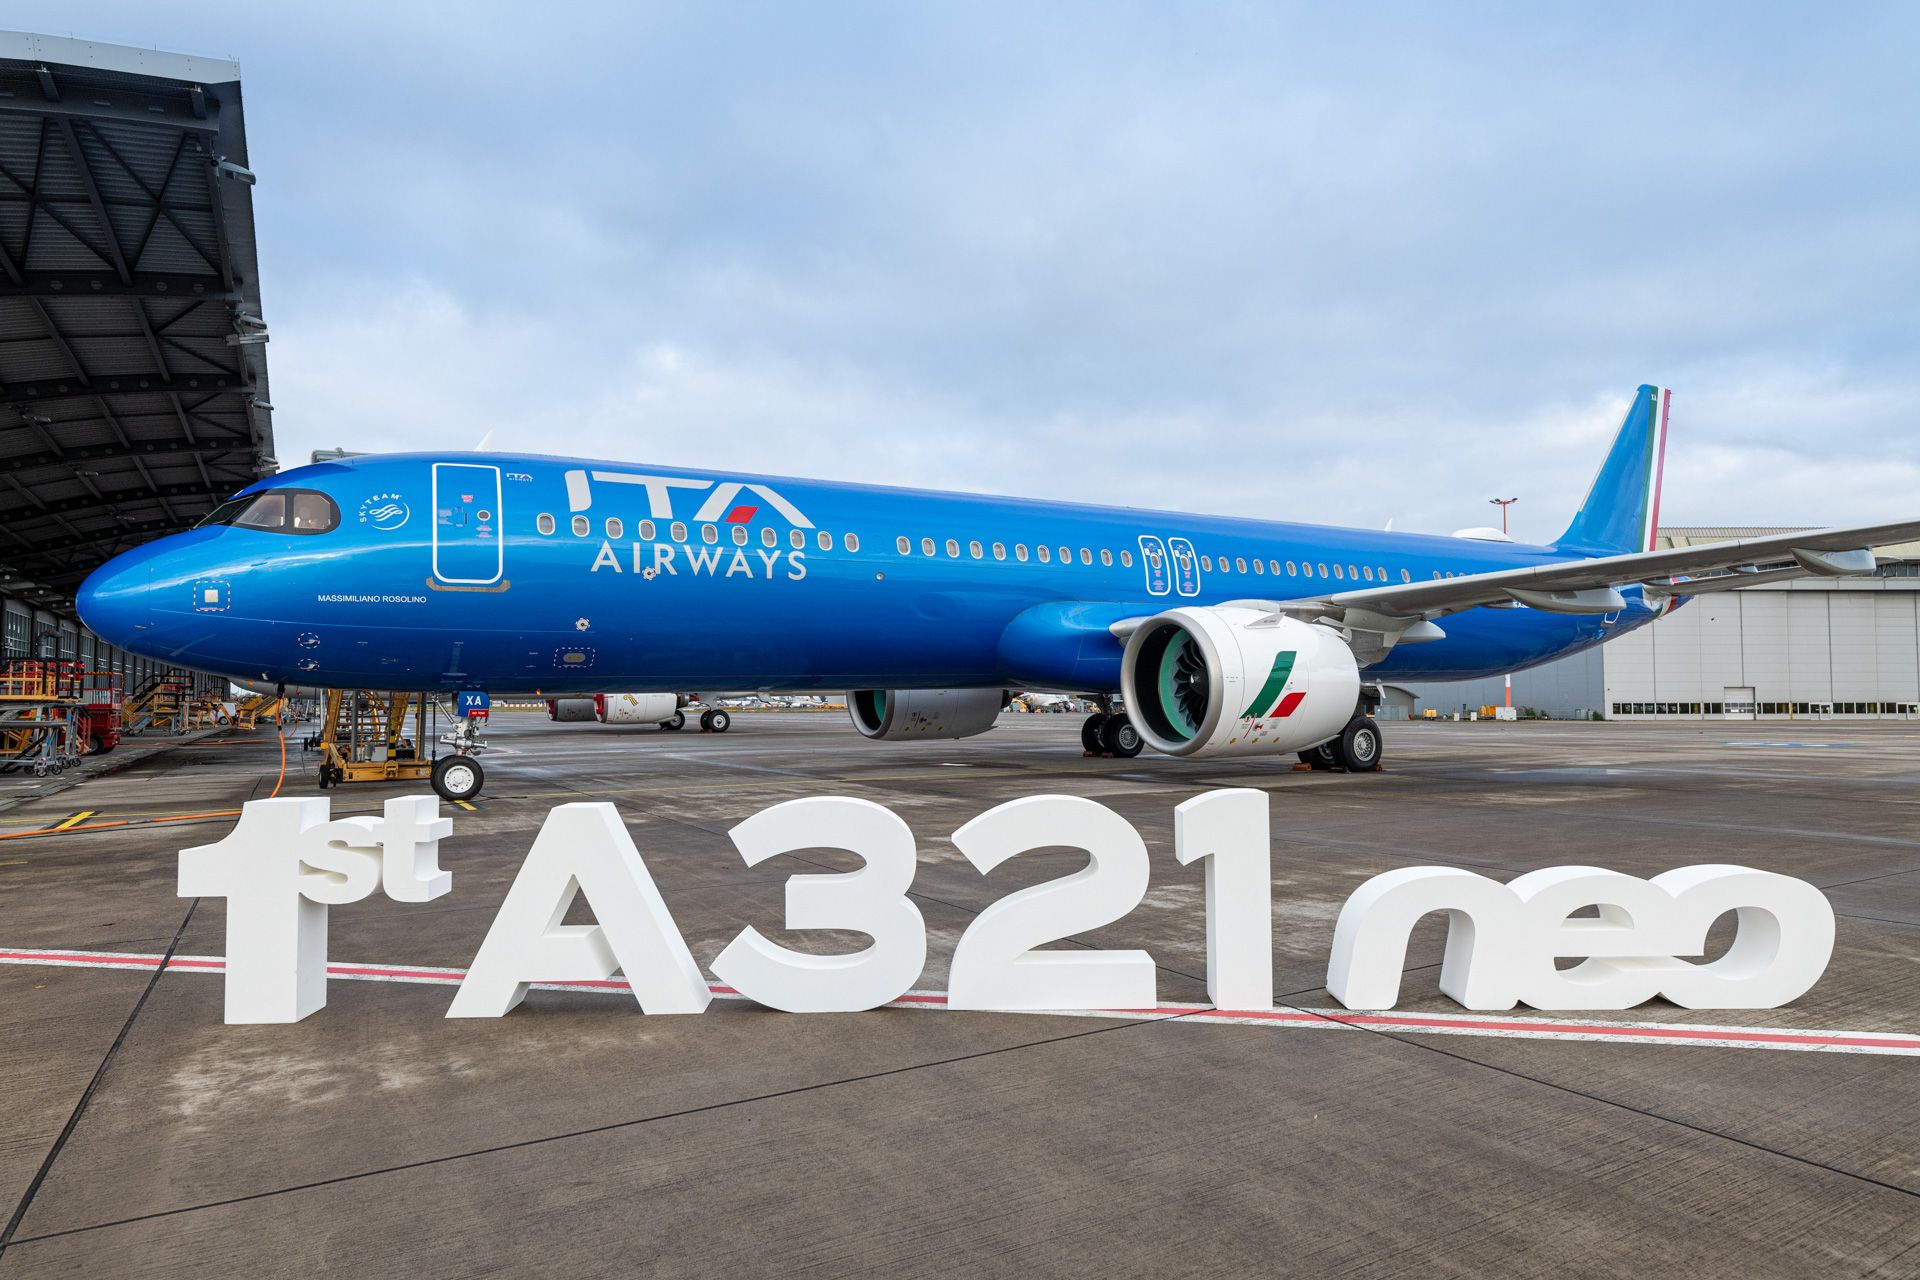 ITA AIrways first Airbus A321neo